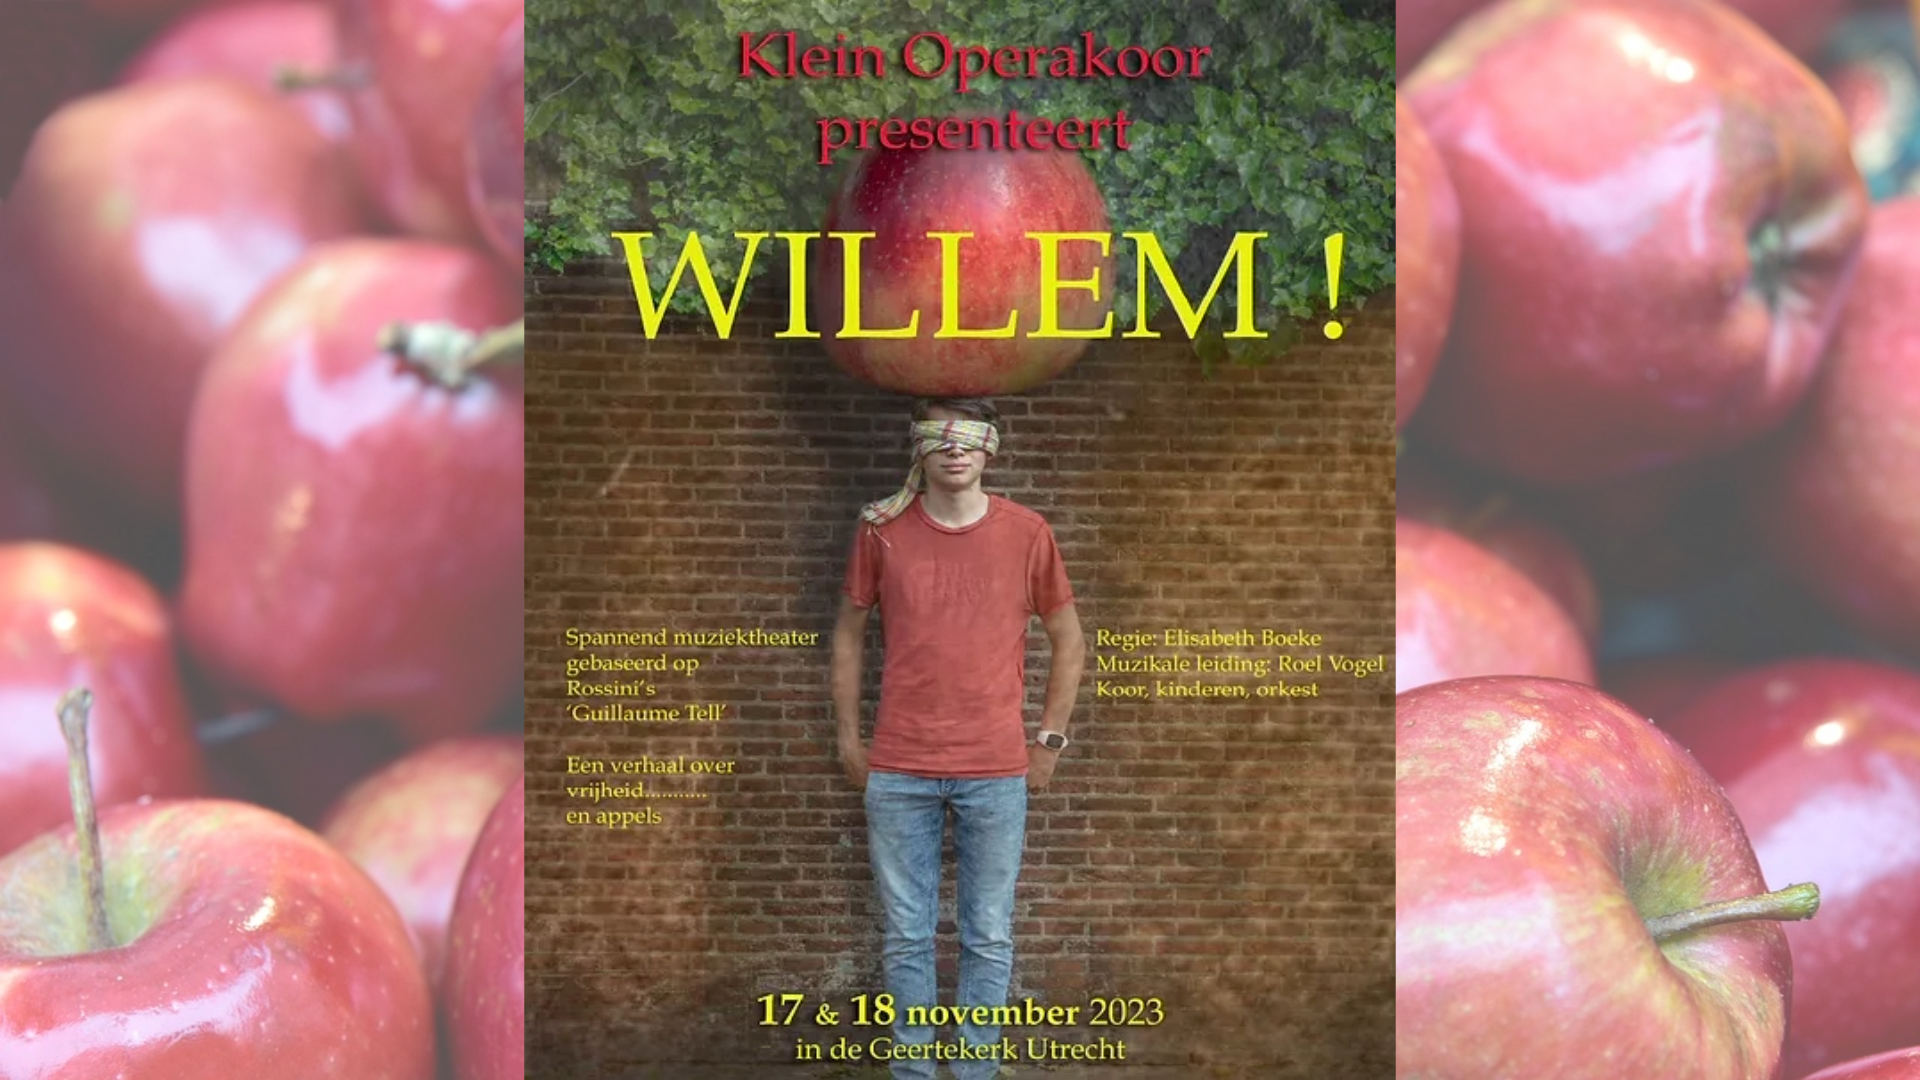 Klein OperaKoor Wilhelminapark ‘Willem!’